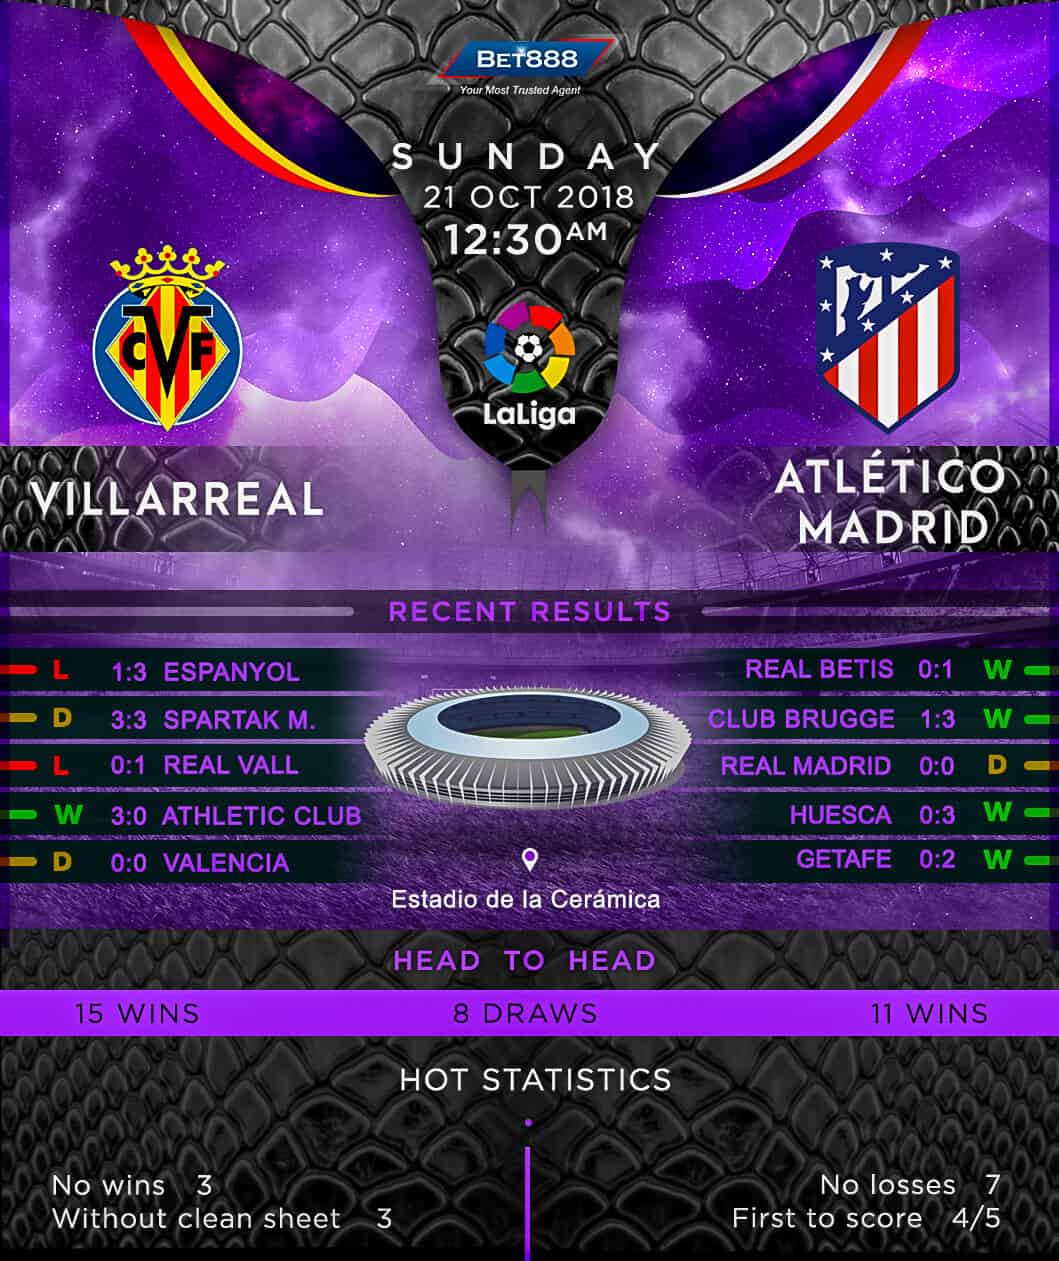 Villarreal vs Atletico Madrid 21/10/18